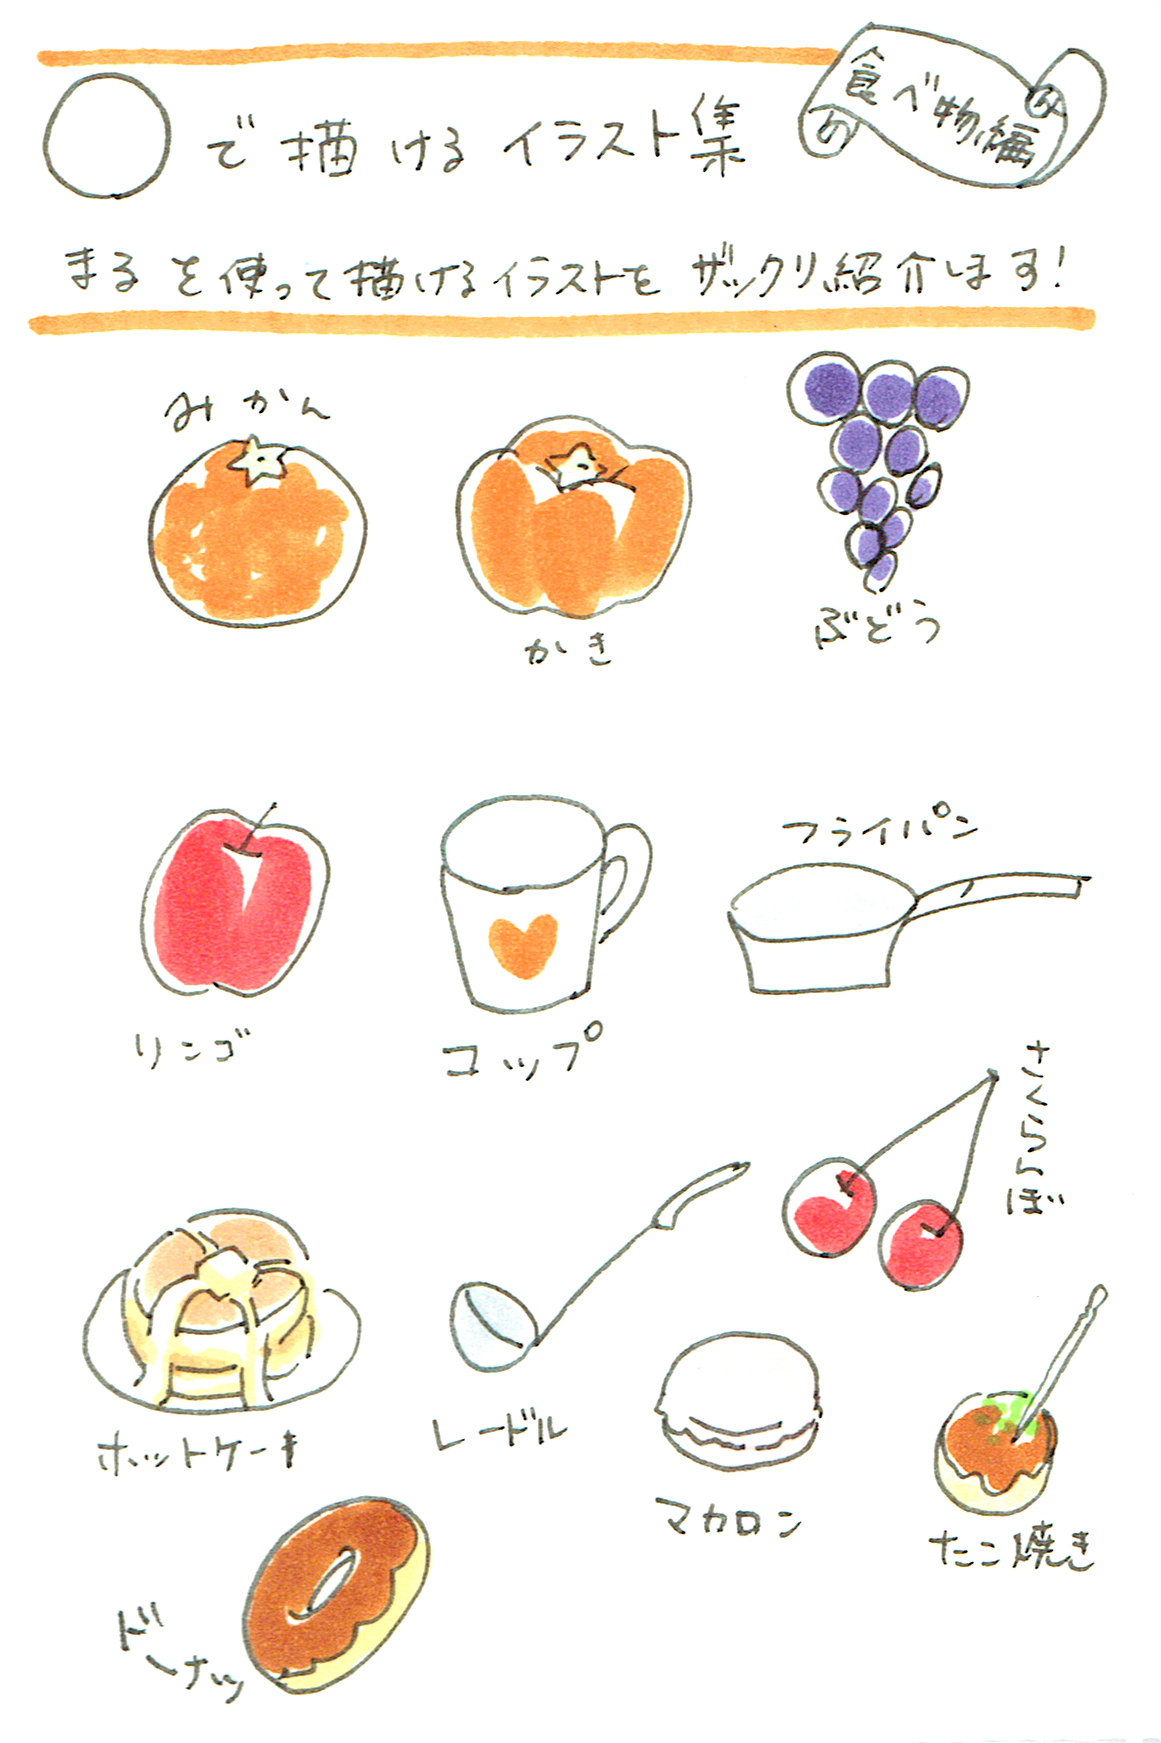 ハブ 唯一 分岐する 色鉛筆 食べ物 描き 方 Chez Motoyama Jp